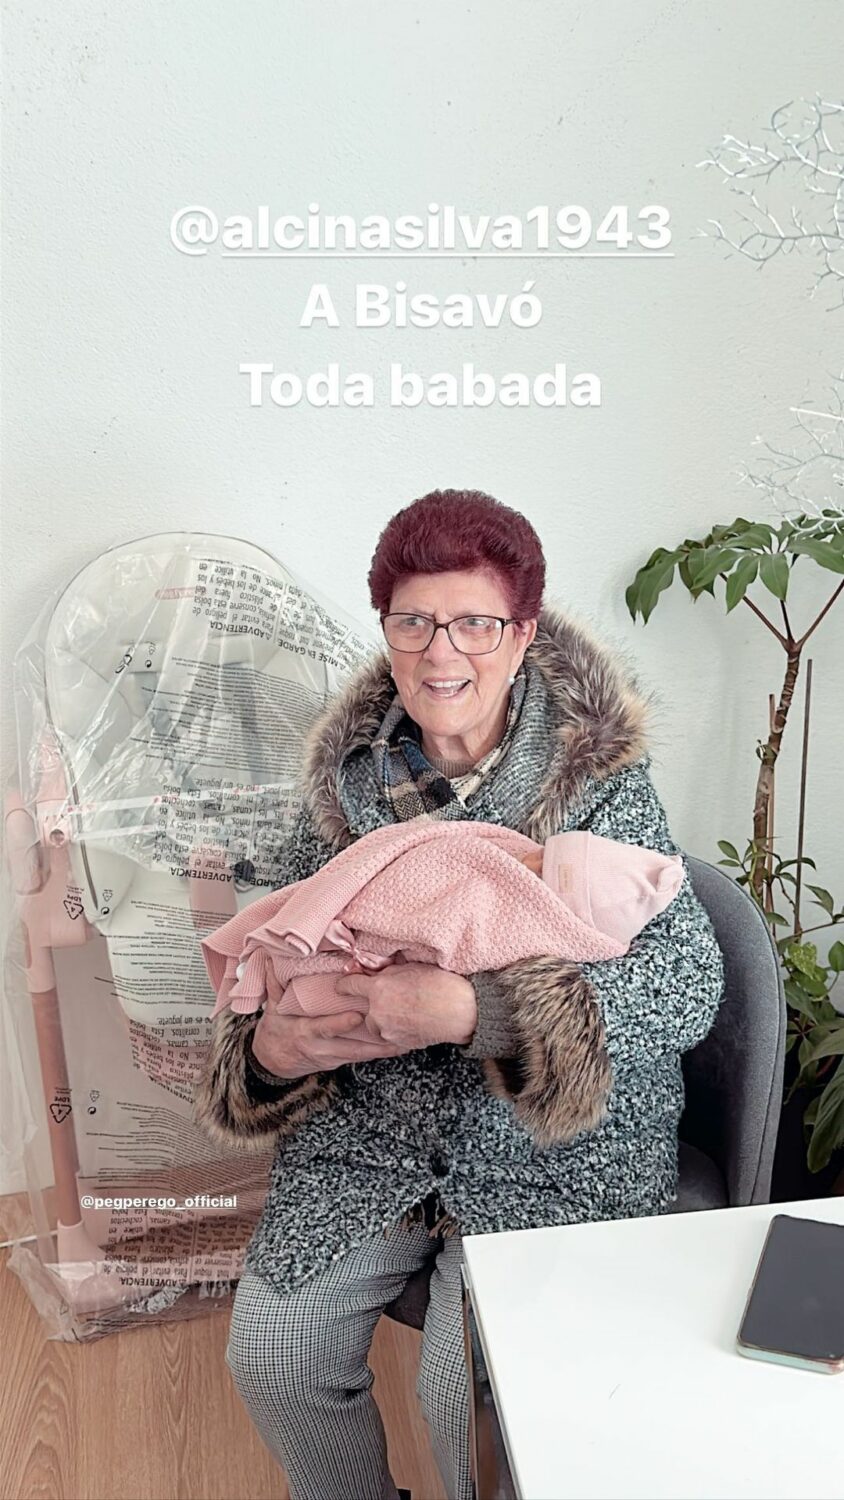 Amor! Marco Costa revela registos únicos com a bebé: &#8220;A bisavó toda babada&#8230;&#8221;